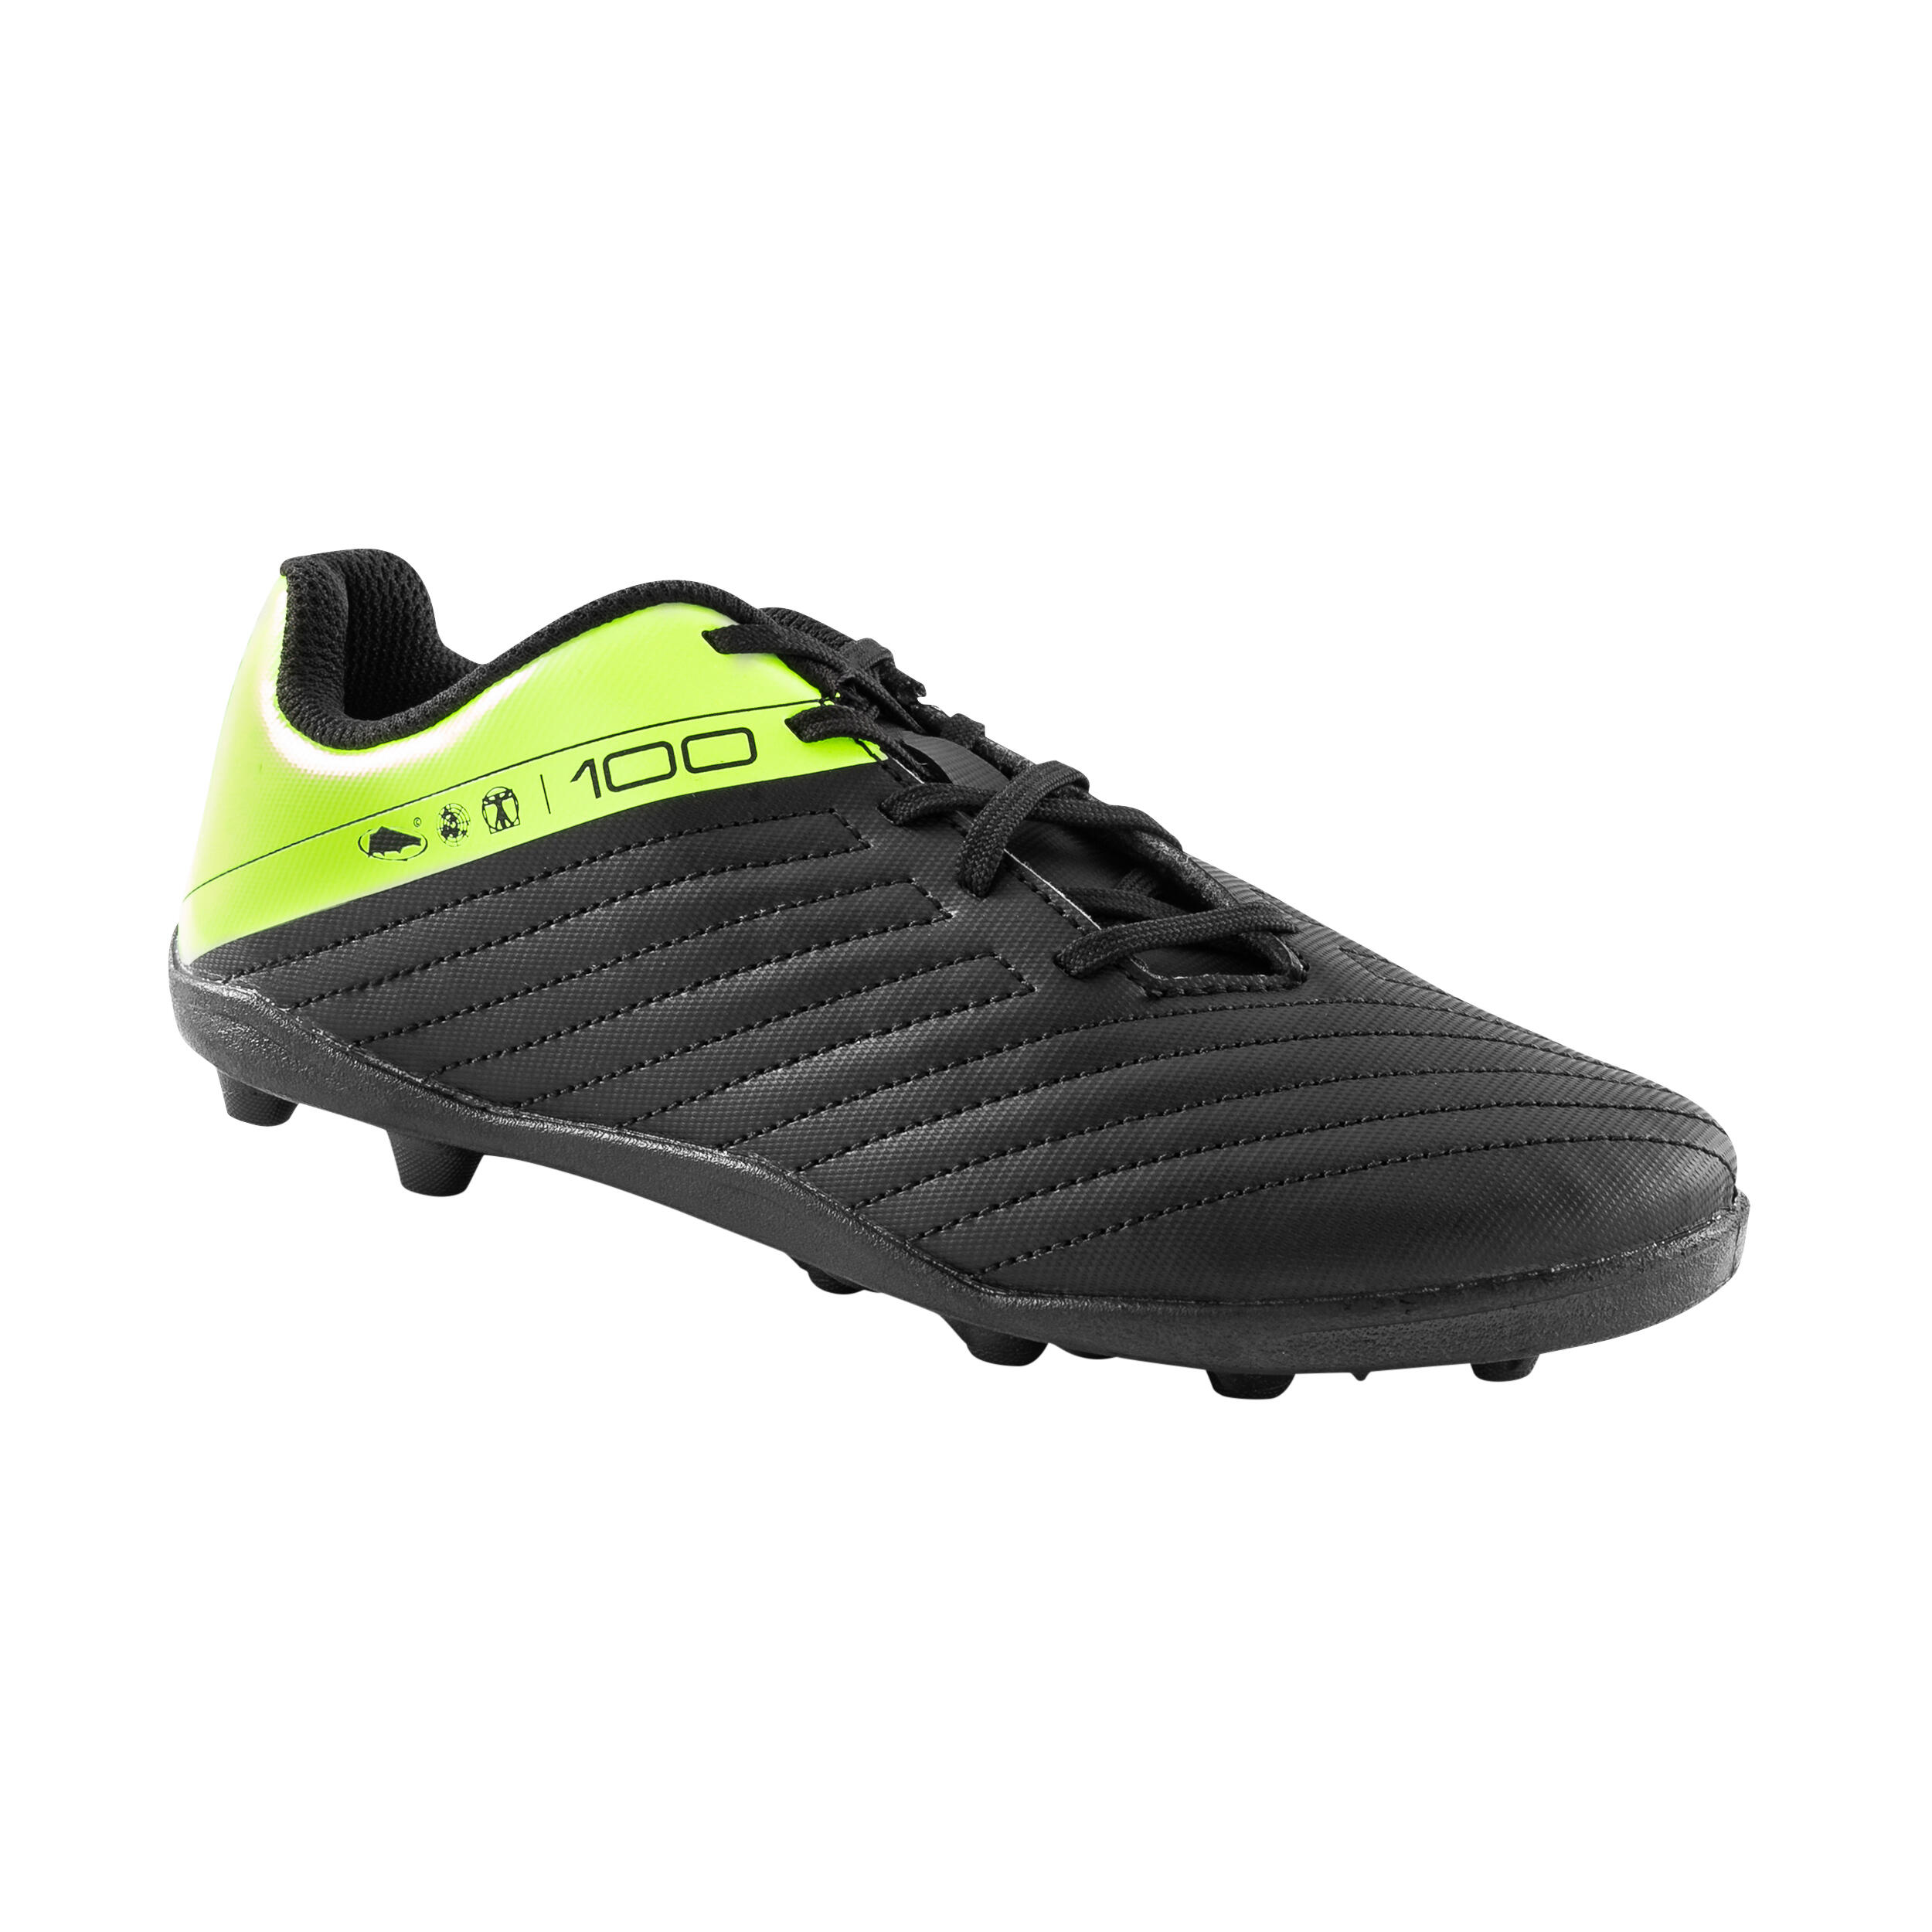 Chaussures de soccer – Viralto 1 FG noir/rouge - Noir, Rouge fluo